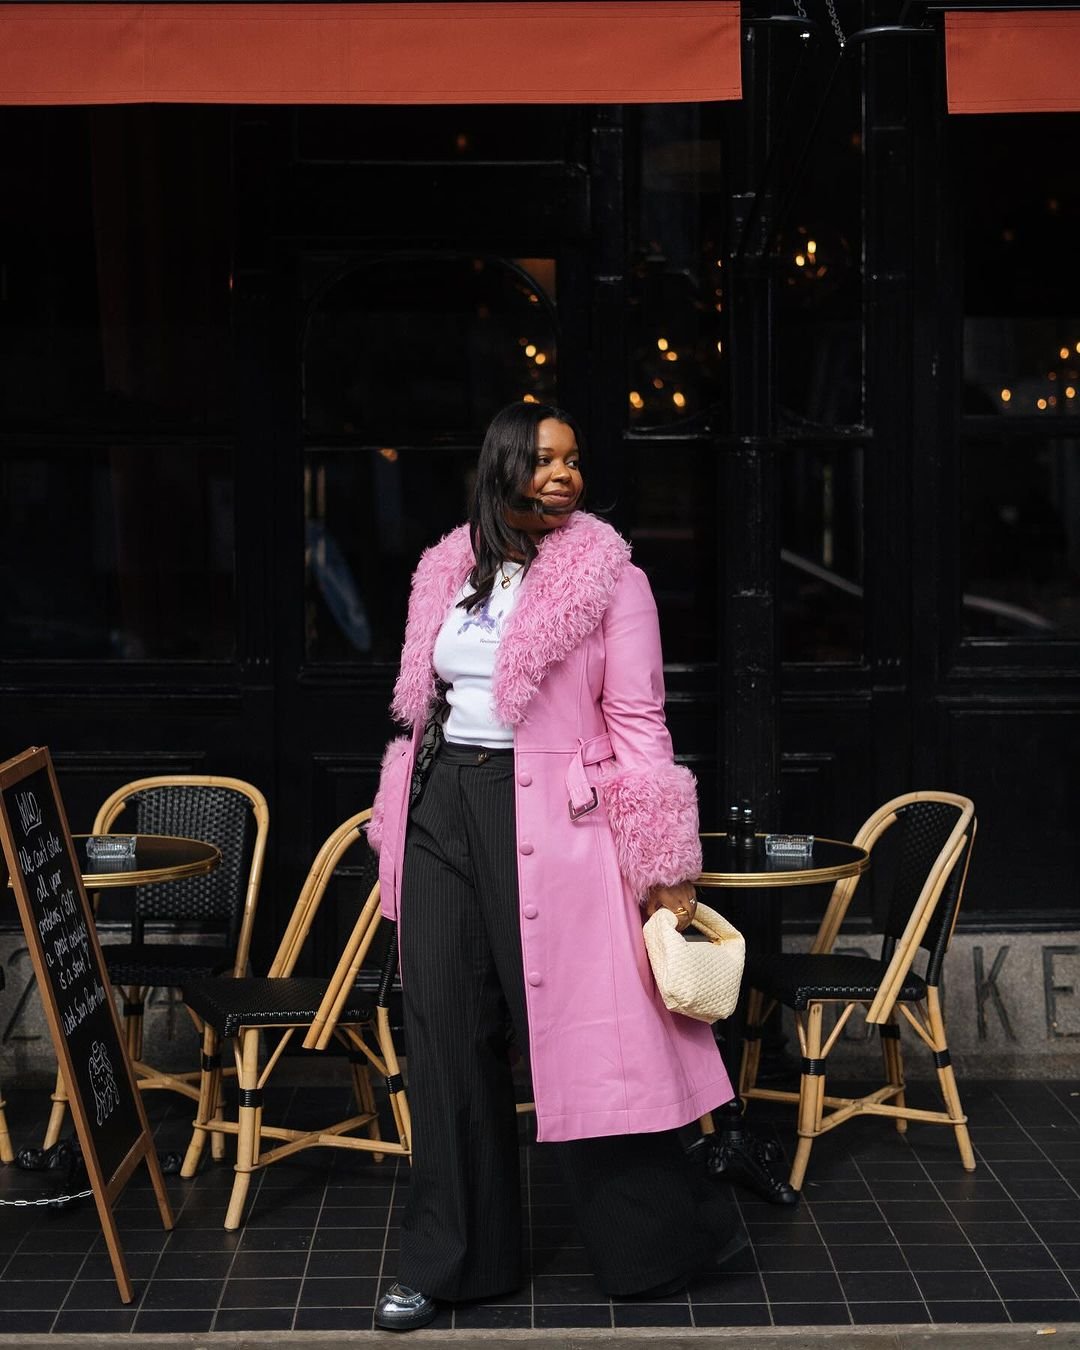 Karina - camiseta-branca-casaco-rosa-calça-risca-de-giz-preta-mocassim-bolsa-branca - looks de frio - primavera - Inglaterra - https://stealthelook.com.br